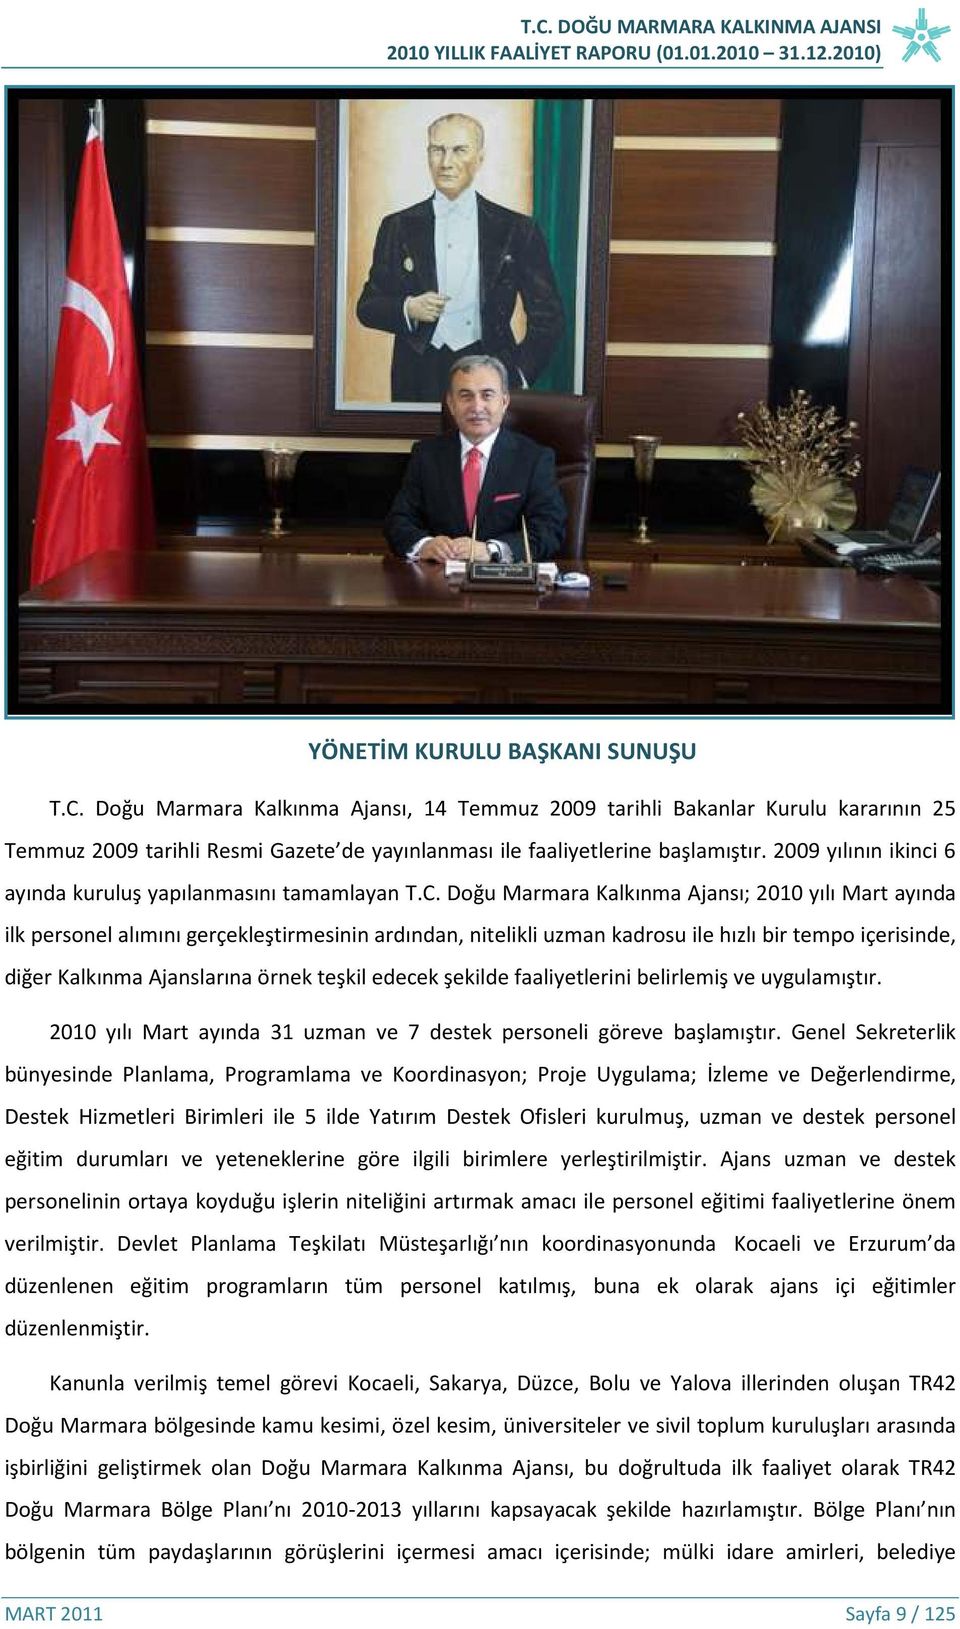 Doğu Marmara Kalkınma Ajansı; 2010 yılı Mart ayında ilk personel alımını gerçekleştirmesinin ardından, nitelikli uzman kadrosu ile hızlı bir tempo içerisinde, diğer Kalkınma Ajanslarına örnek teşkil